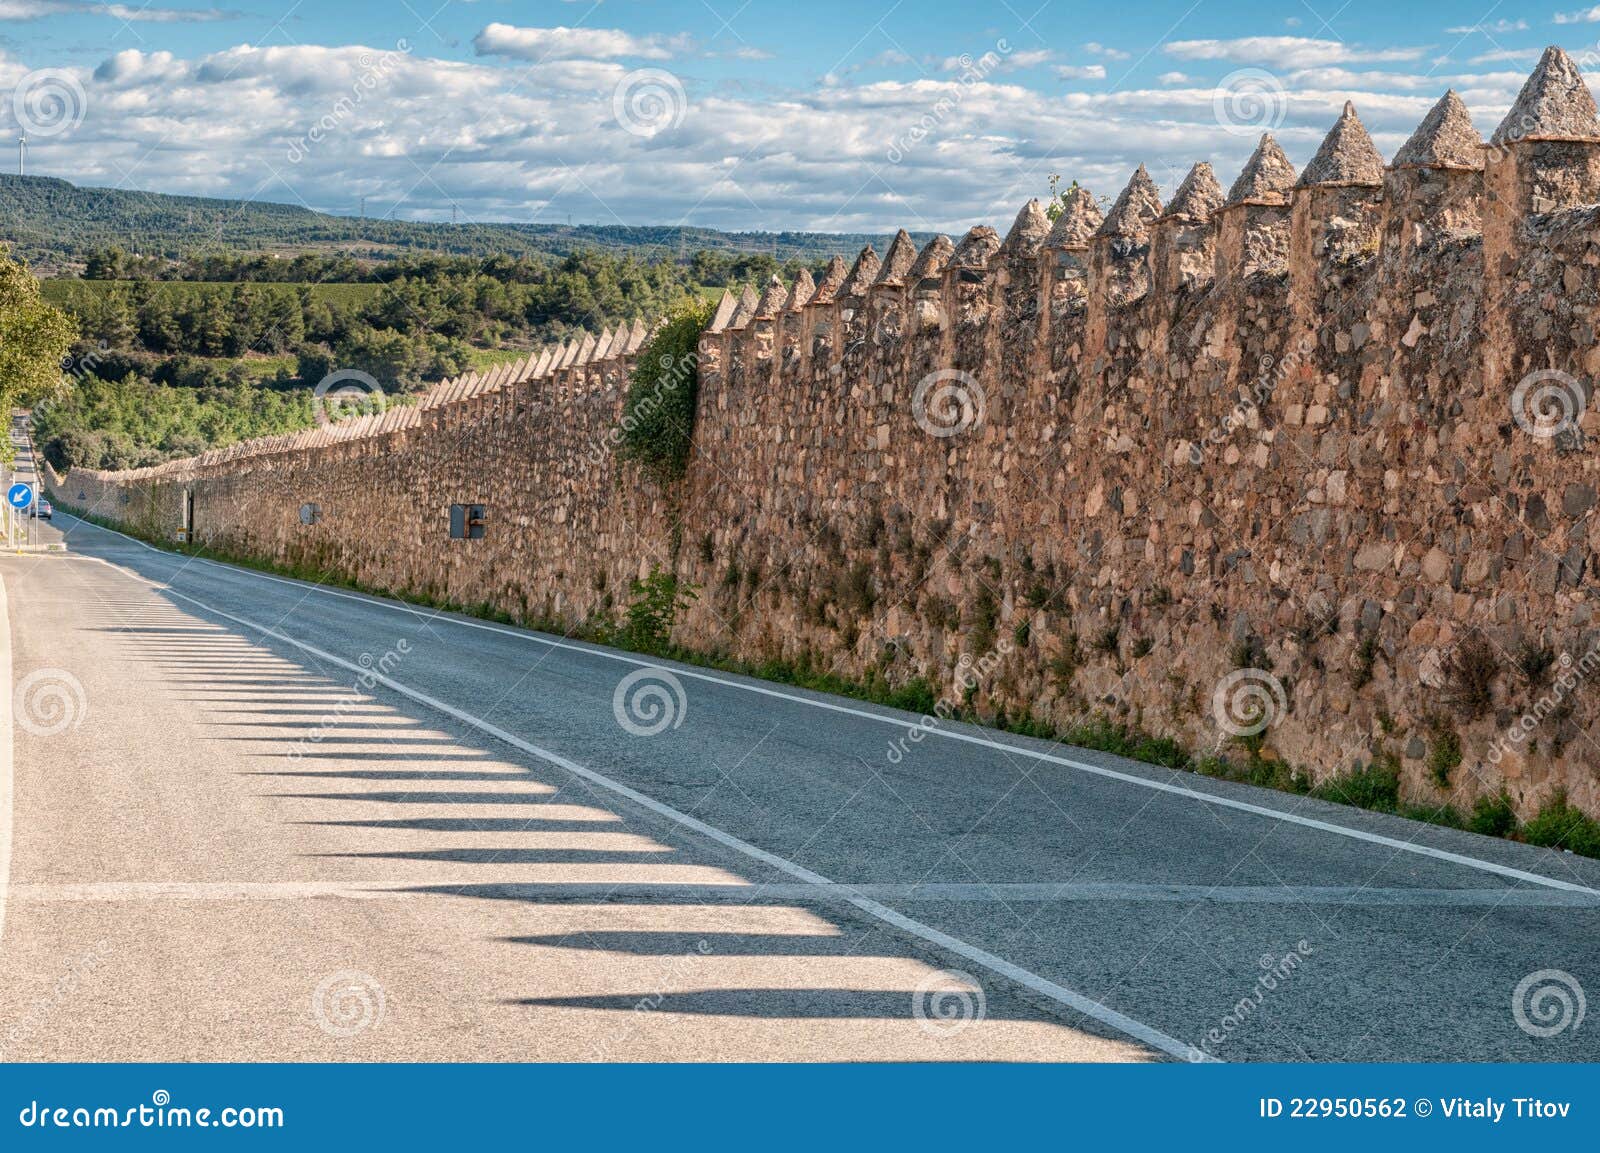 medieval wall, monastery of santa maria de poblet,